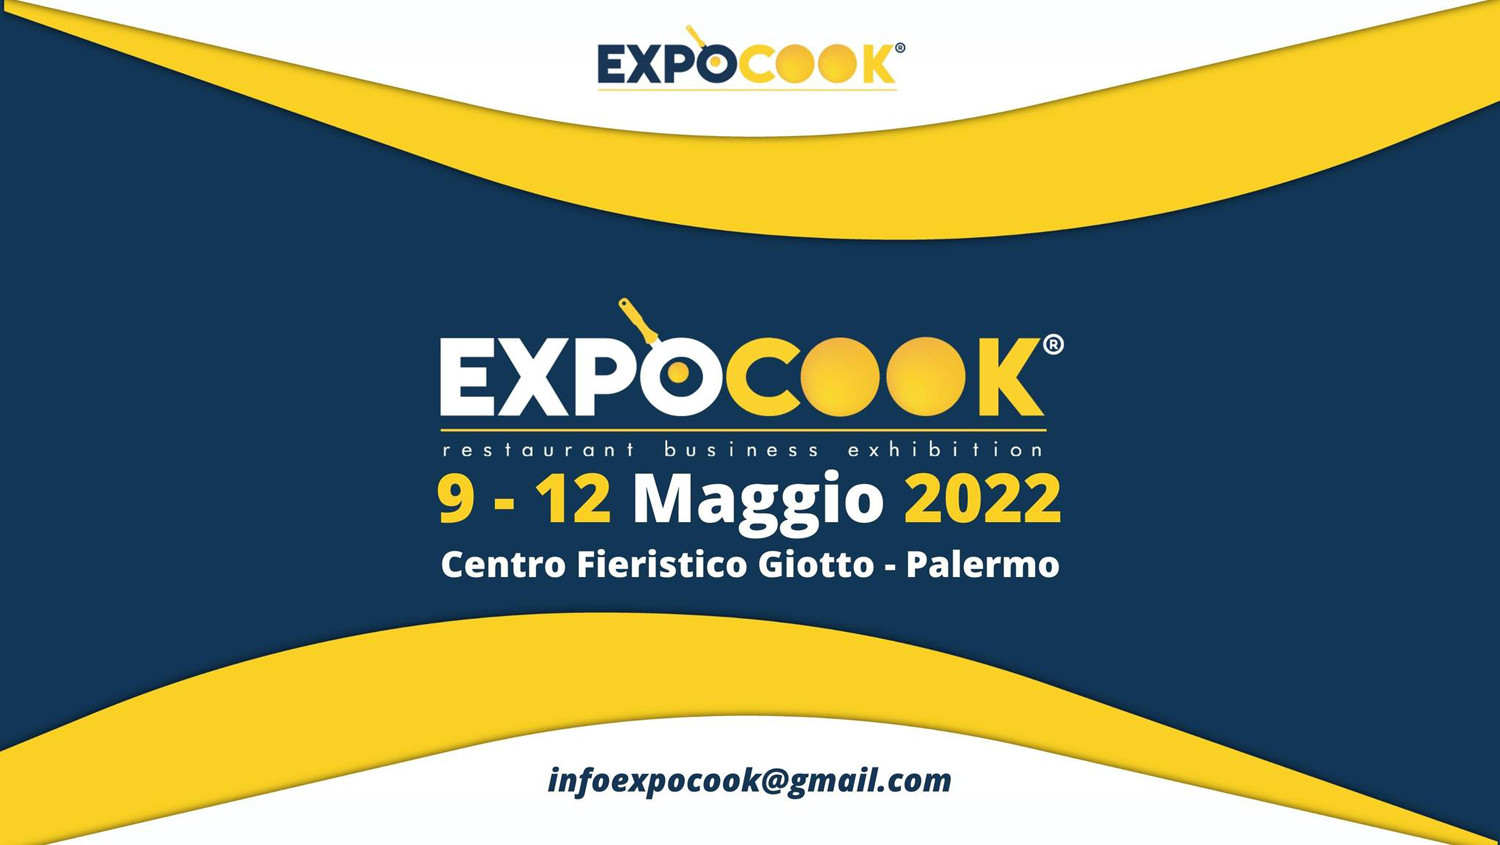 Tropicali di Sicilia a Expocook 2022